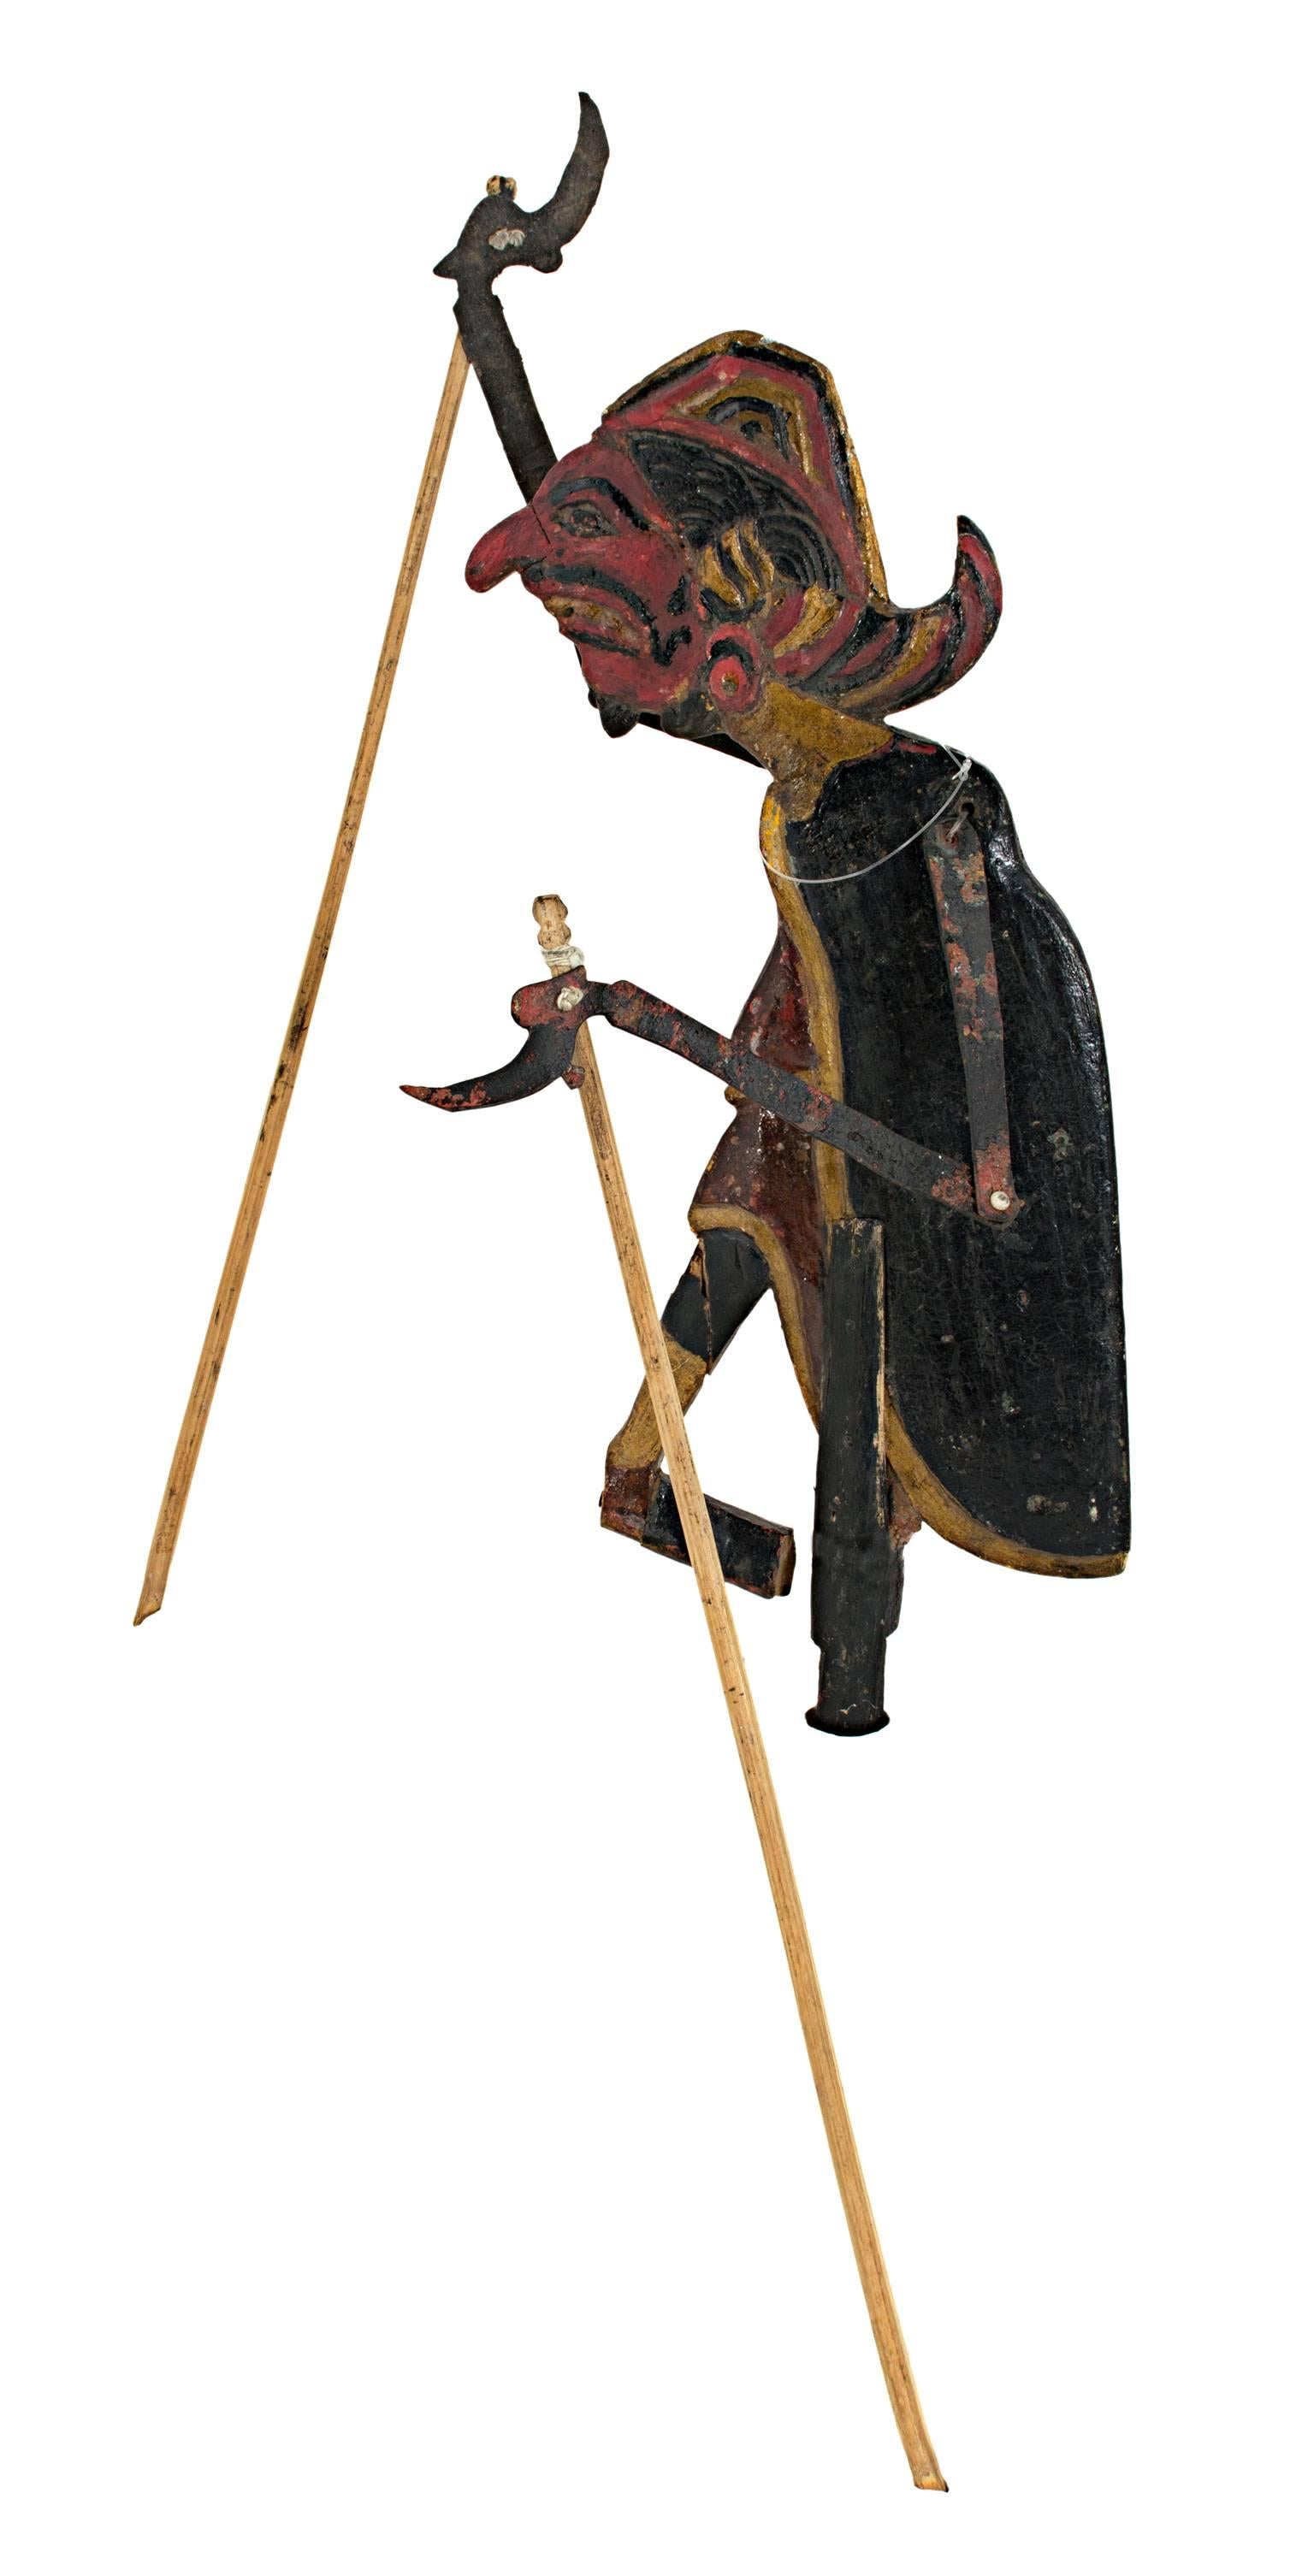 Figurative Sculpture Unknown - « Puppet (homme) en bois de feuillus » créé en Indonésie au 19e siècle